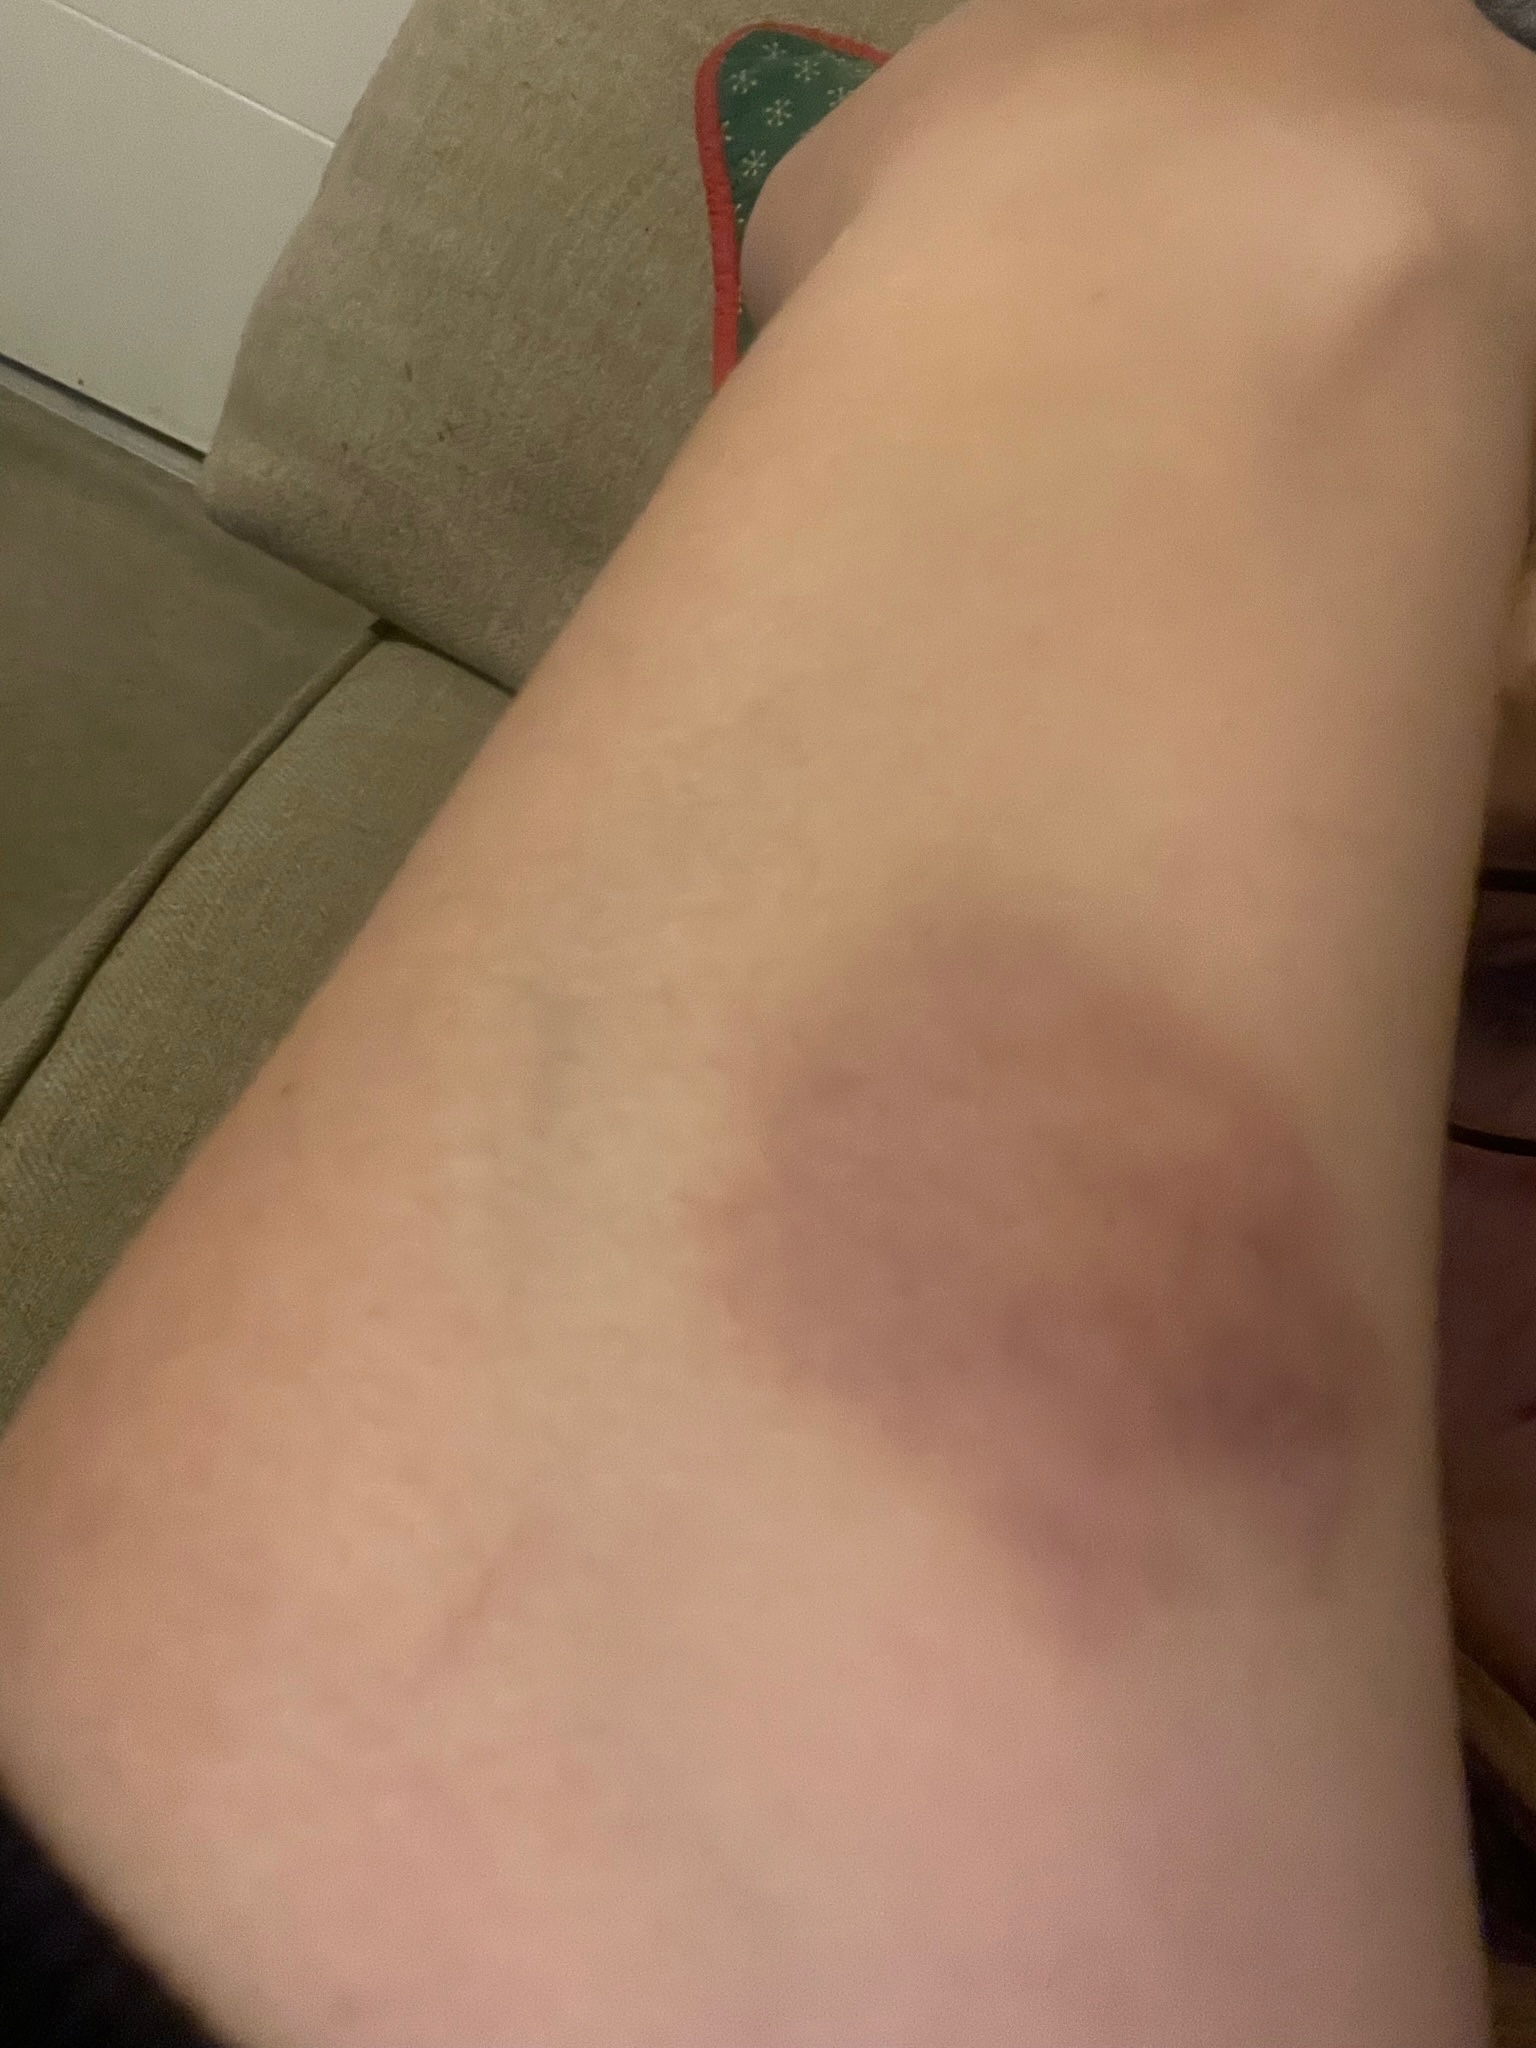 arm bruises